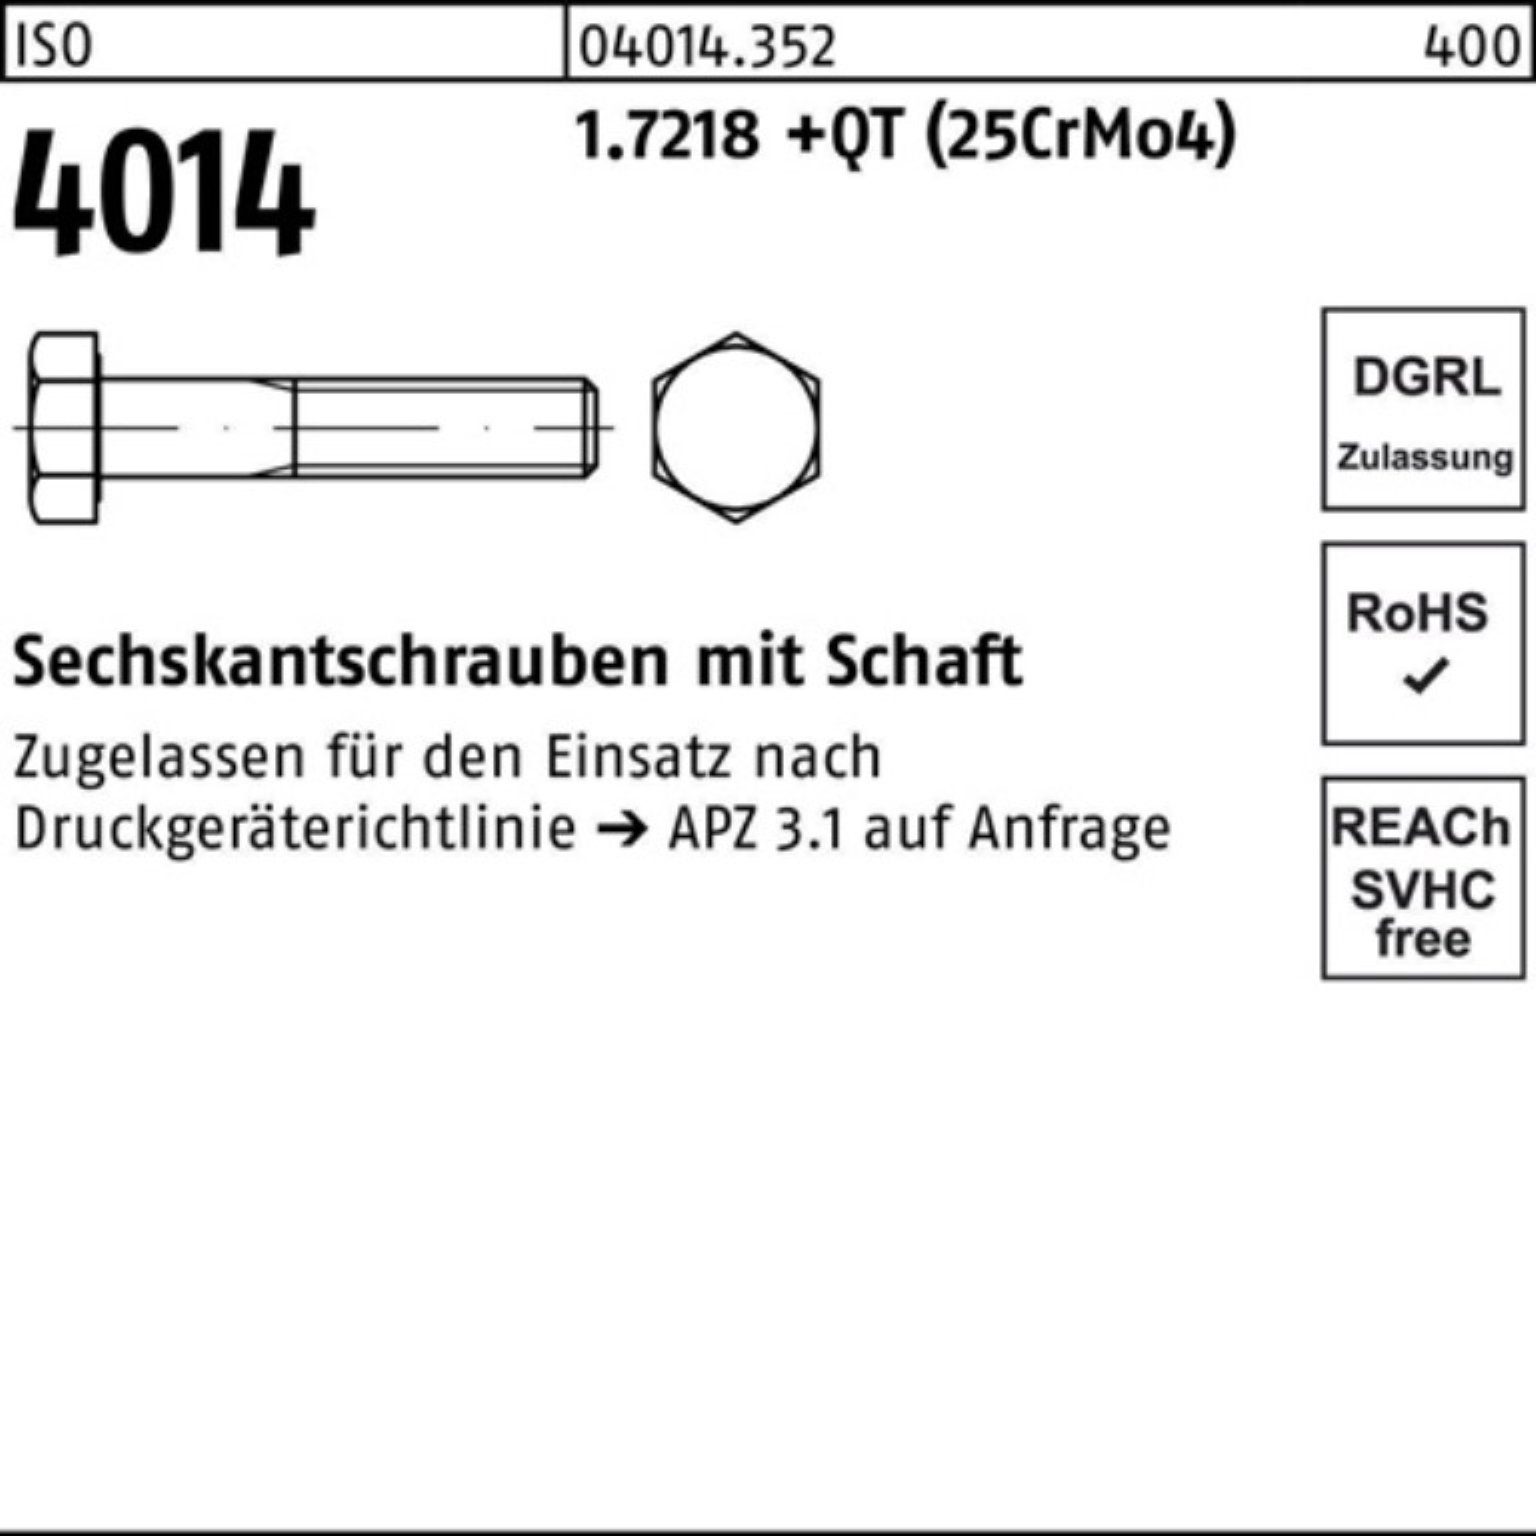 Bufab Sechskantschraube 100er Pack 170 1.7218 (25Cr Schaft Sechskantschraube +QT M33x 4014 ISO